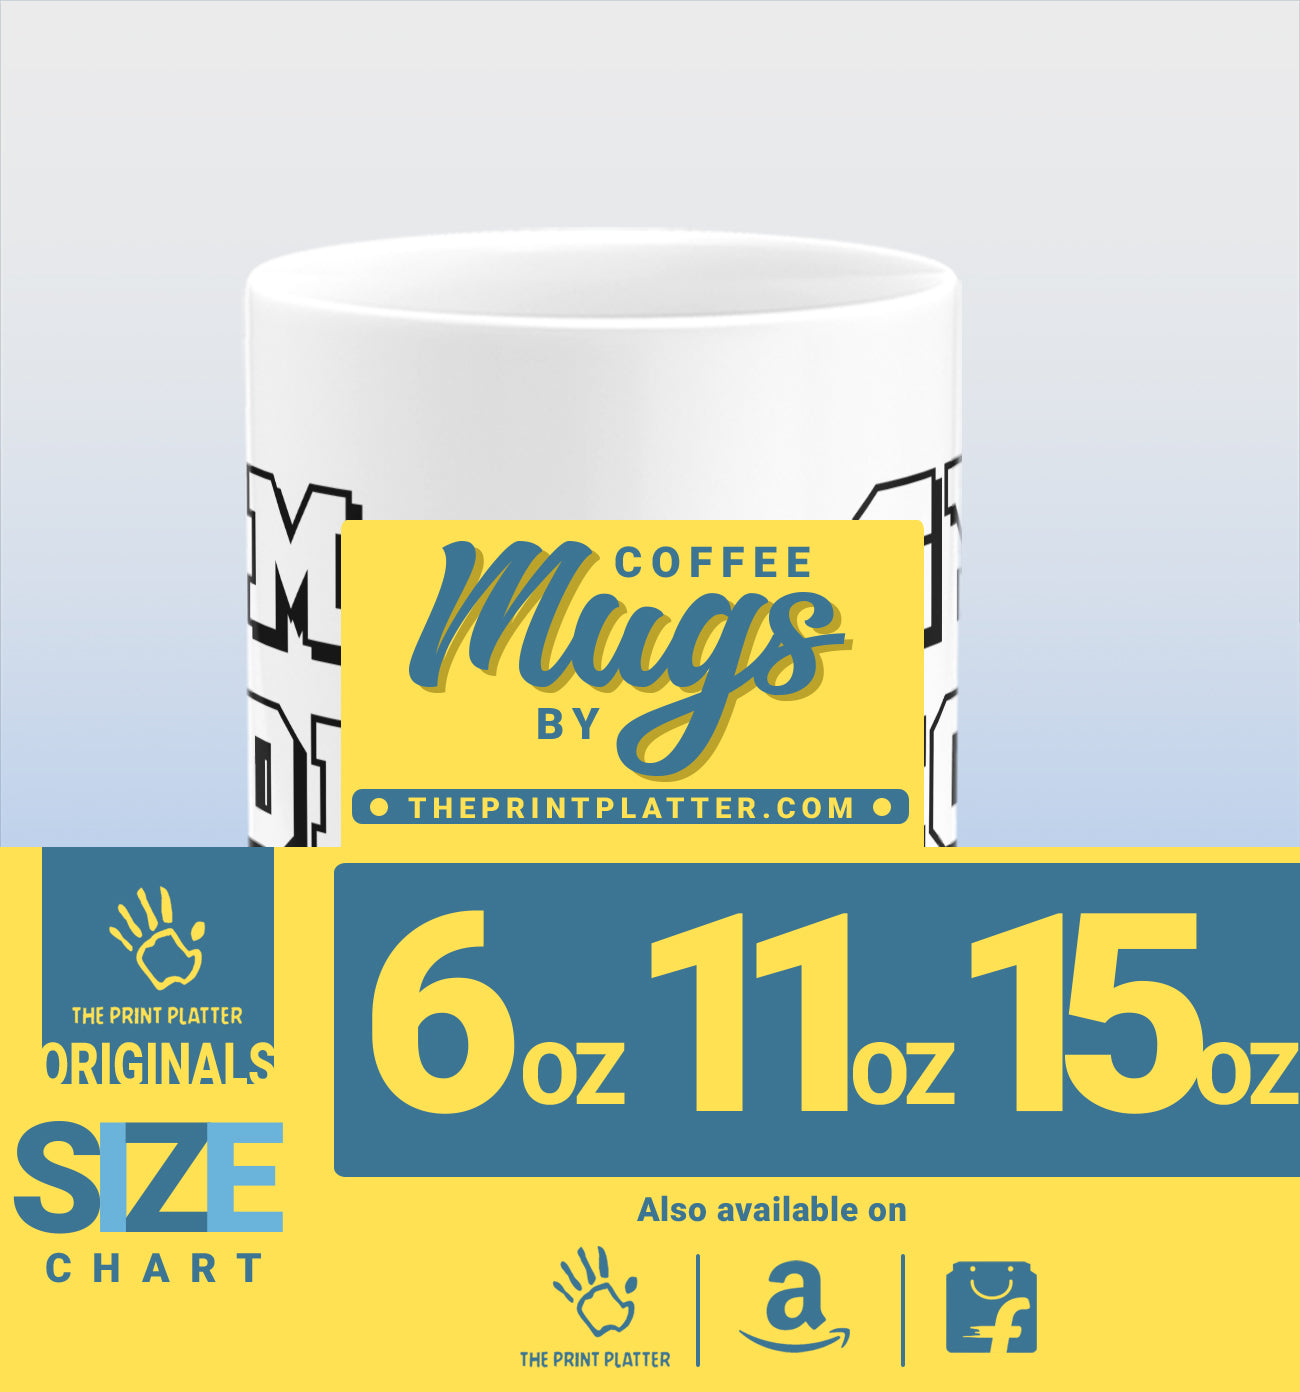 Gym Mode On White Cermic Coffee Mug 330 ml, Microwave & Dishwasher Safe| CM-R33